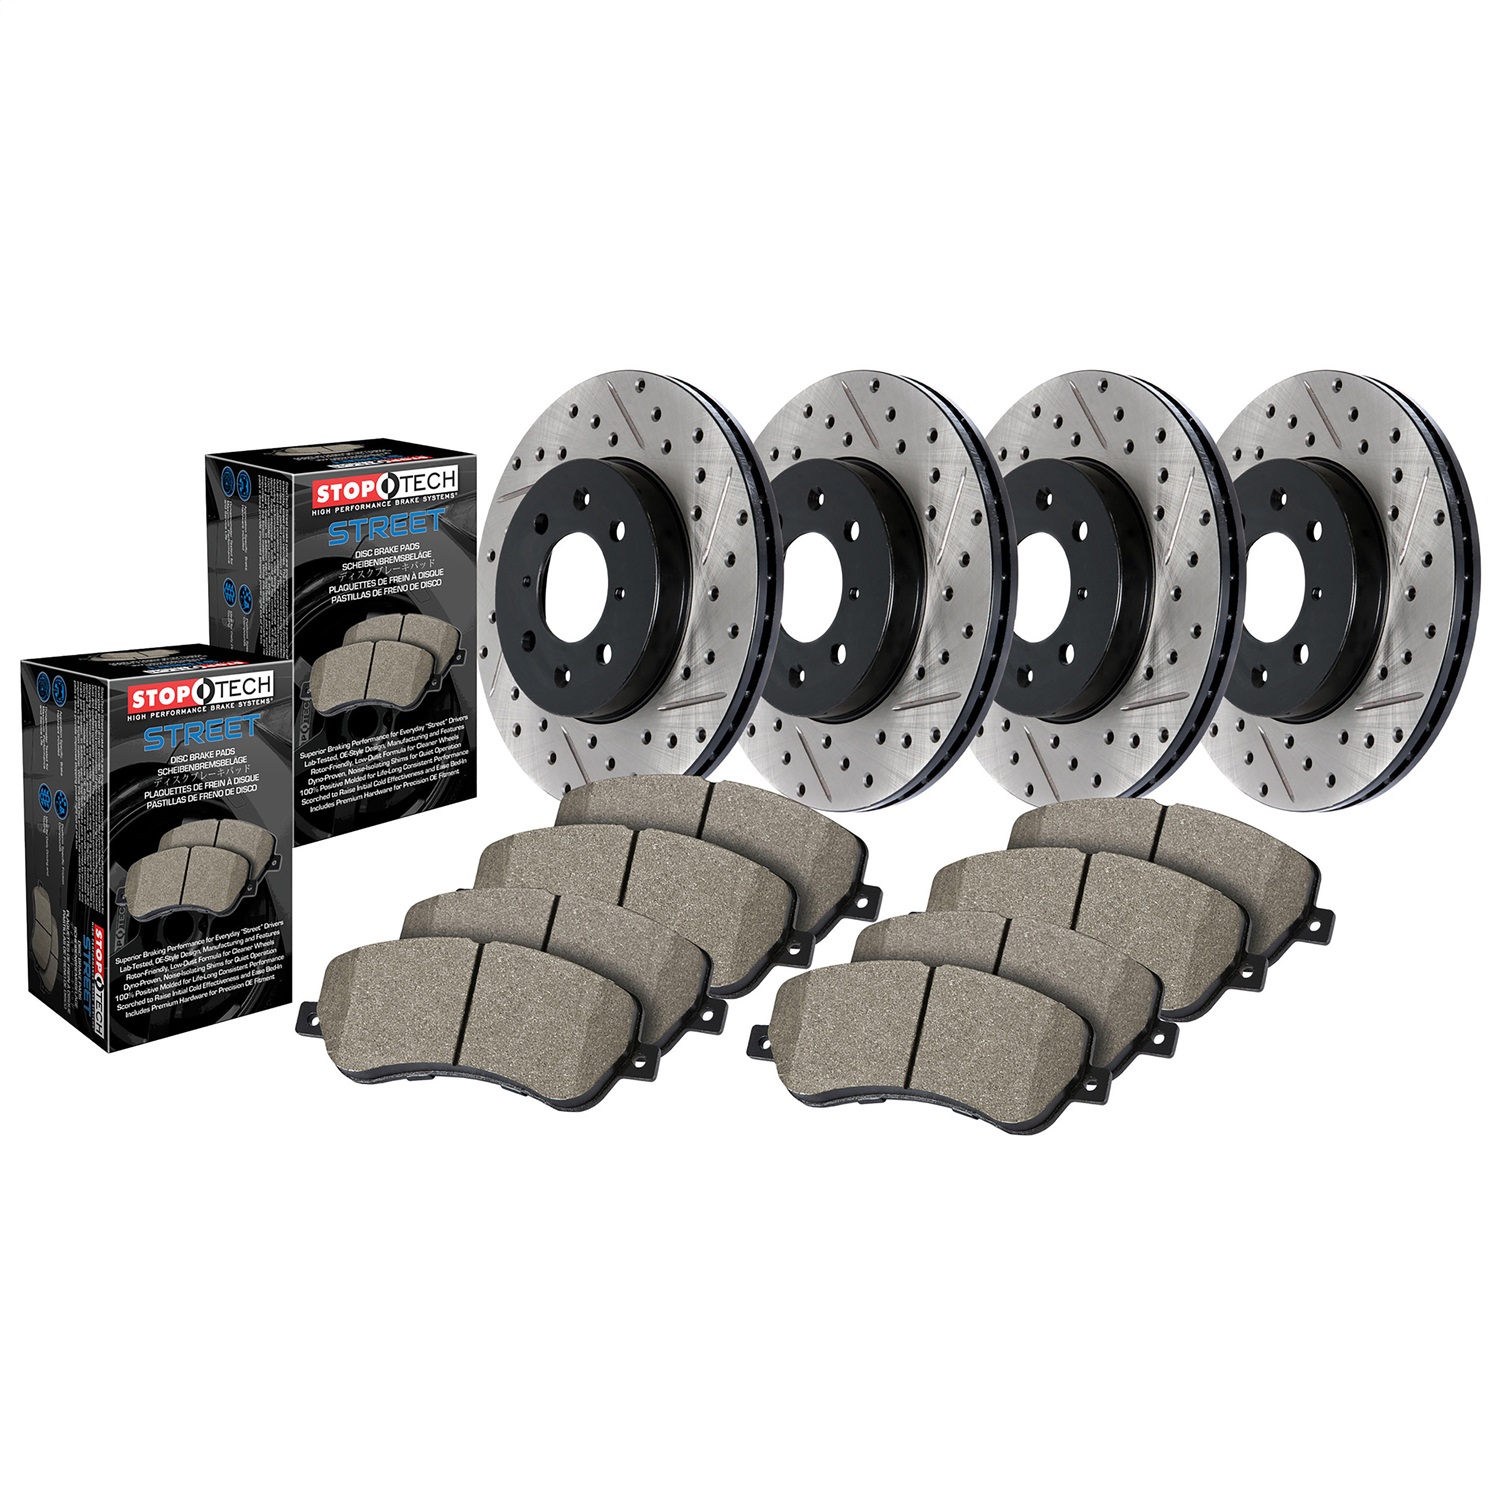 StopTech 935.42001 Disc Brake Upgrade Kit